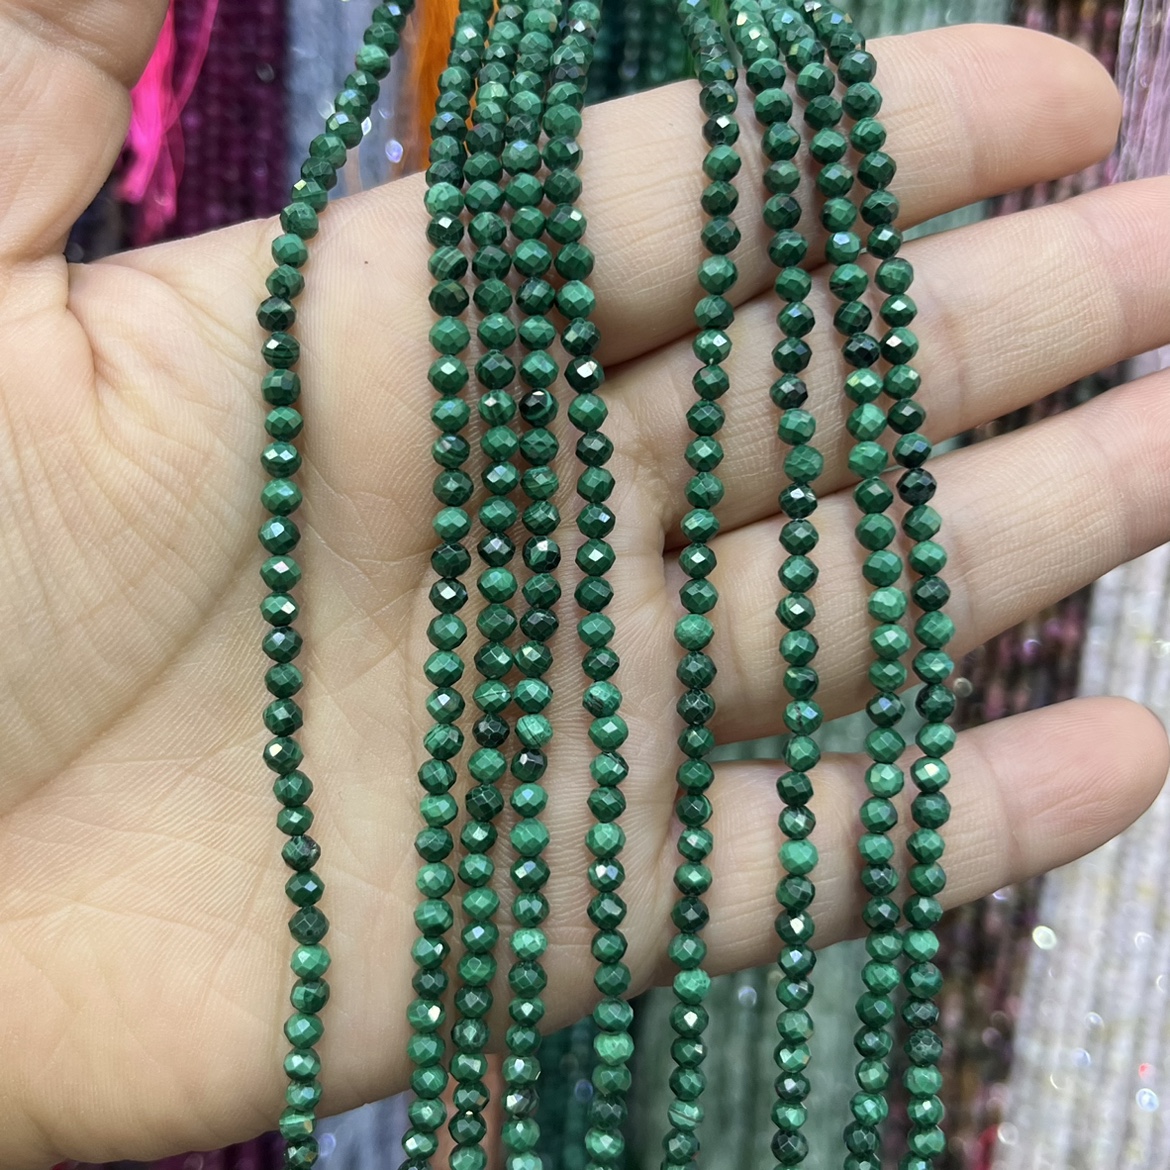 天然3mm刻面圆型孔雀石散珠手链半成品一条38厘米锁骨链配珠绿色